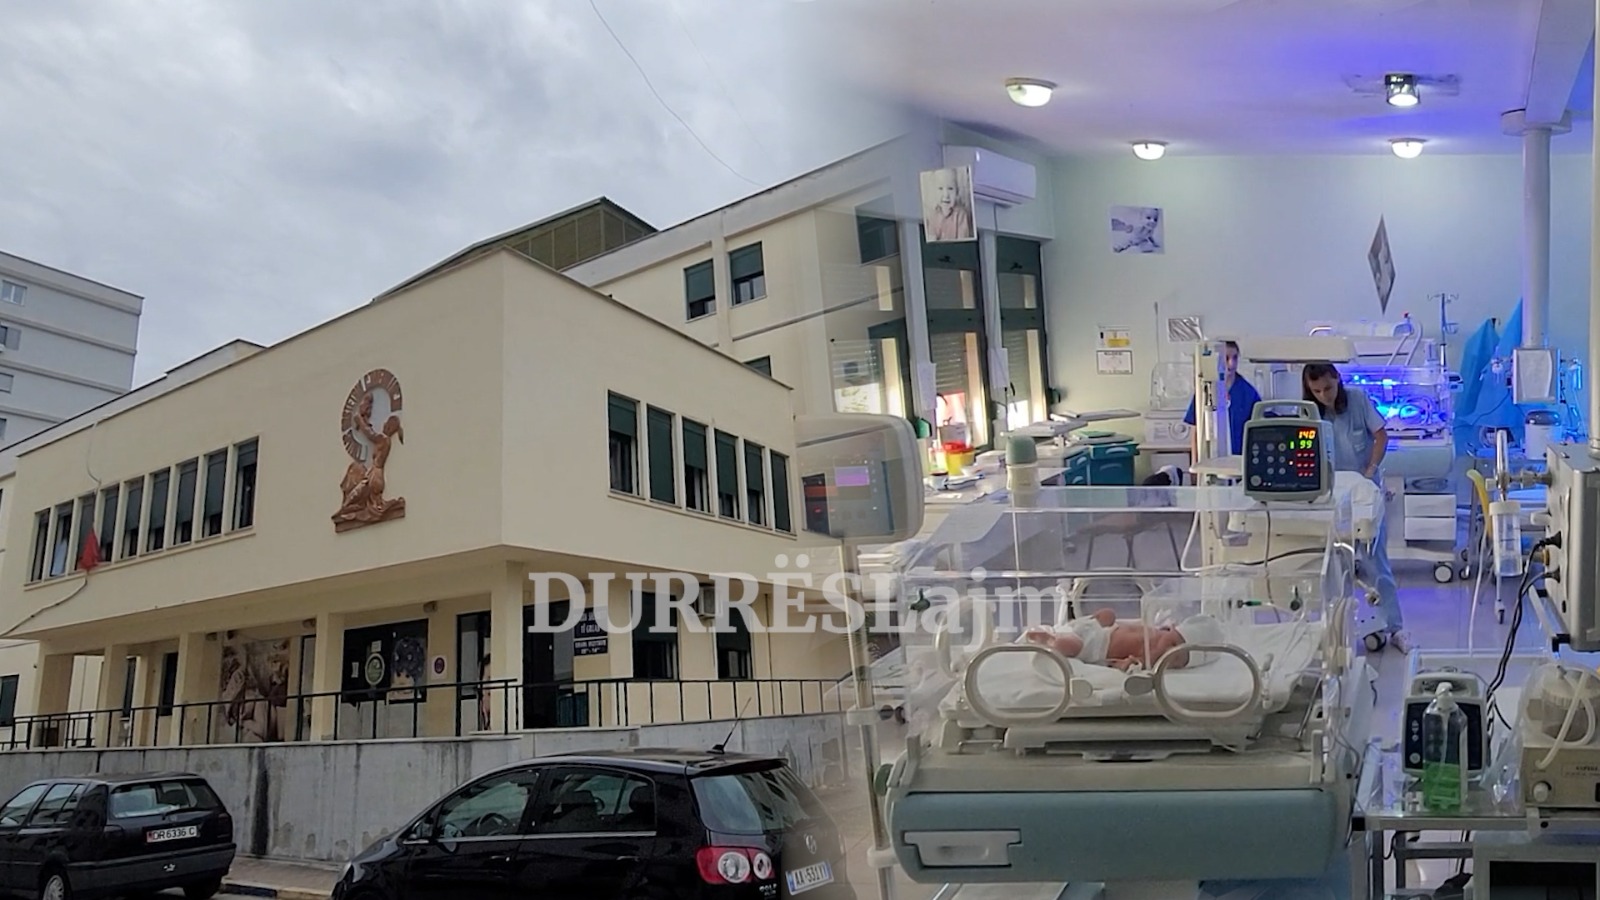 Ulet numri i lindjeve në maternitetin e Durrësit, shefja Shahini: 3 janë faktorët që kanë ndikuar (VIDEO)